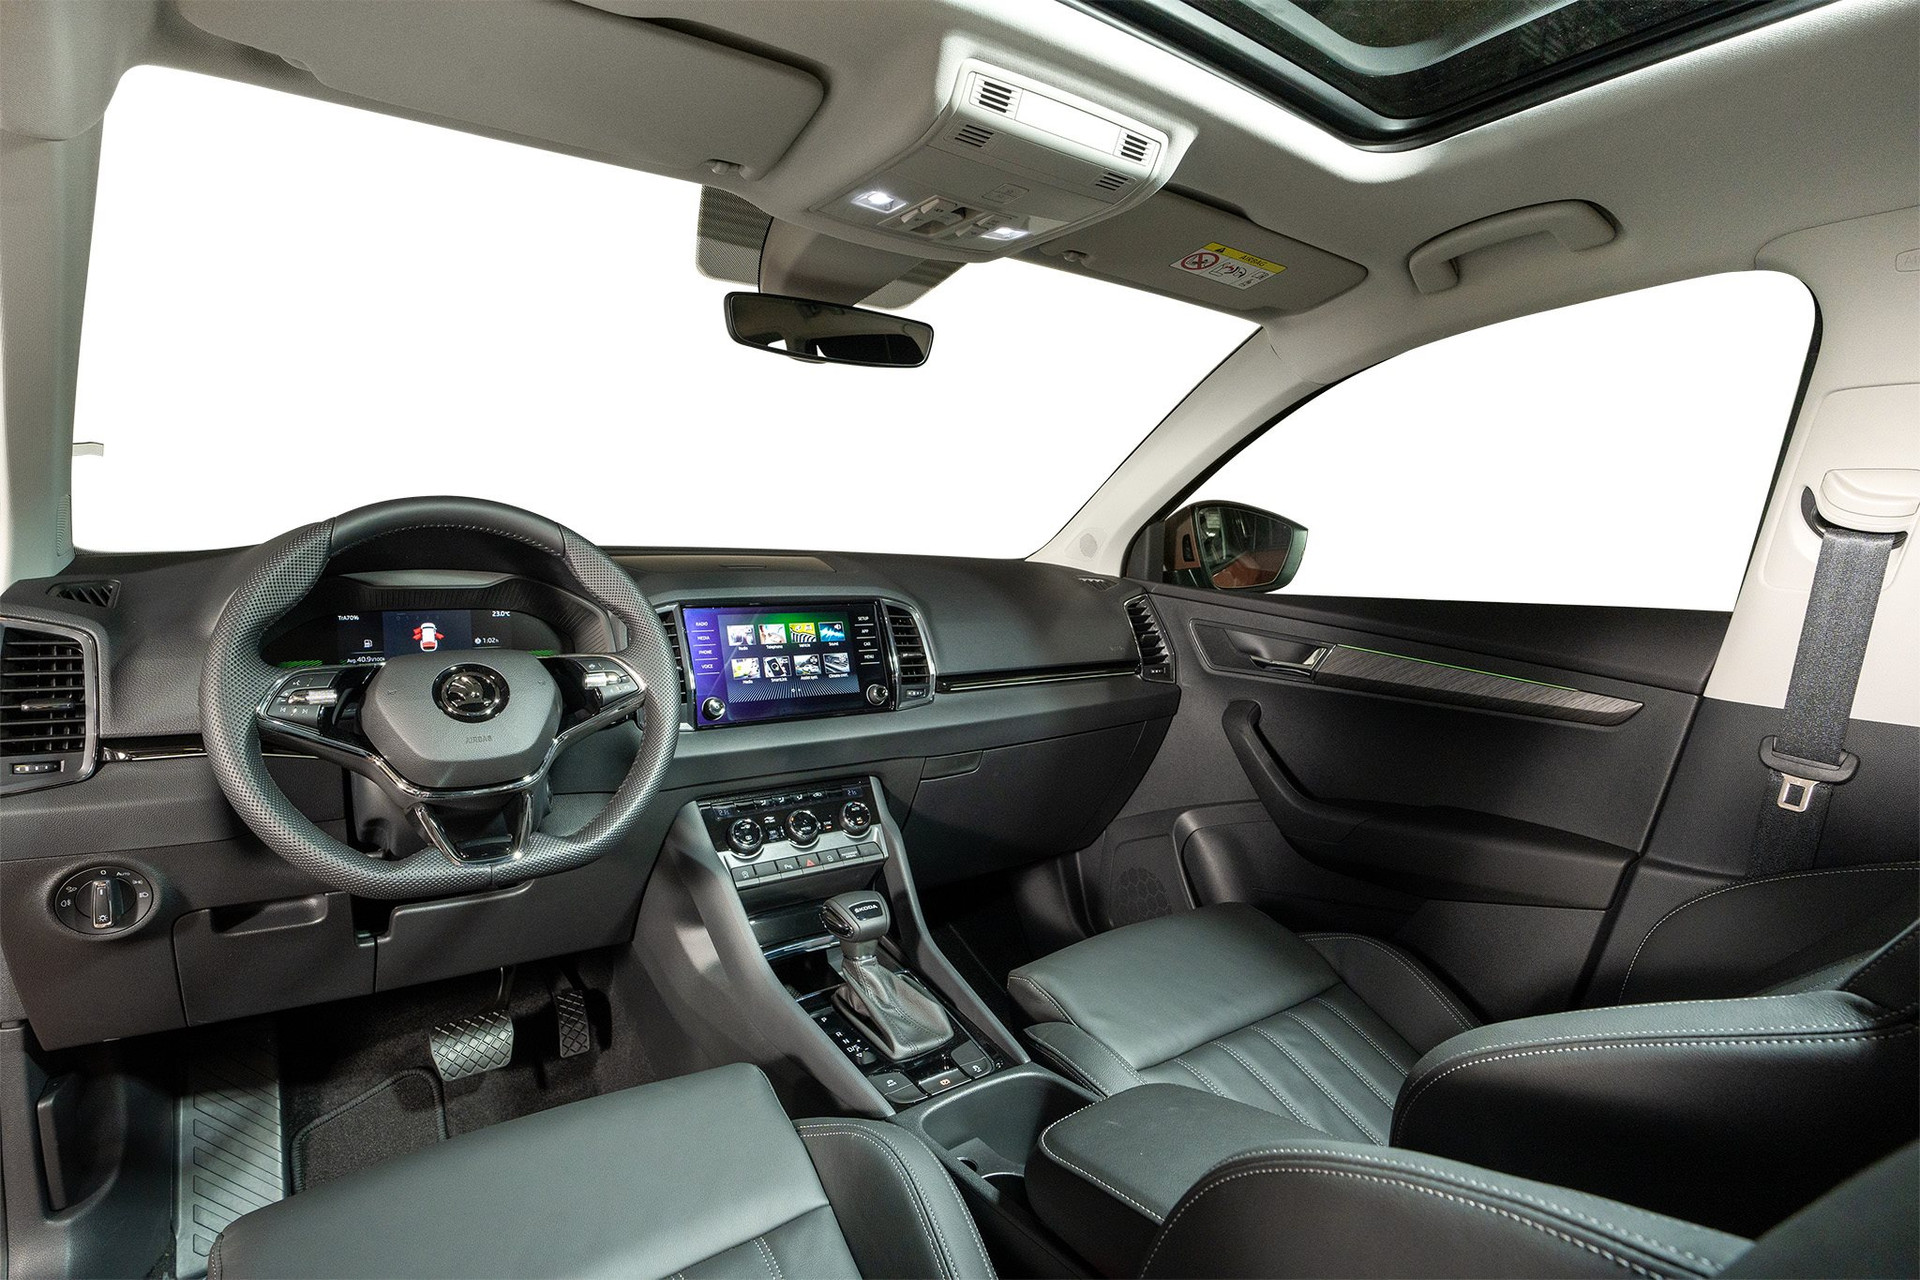 Skoda Karoq - SUV cỡ C dùng chung khung gầm với Volkswagen, chốt giá từ 999 triệu đồng cạnh tranh với Mazda CX-5 - Ảnh 5.